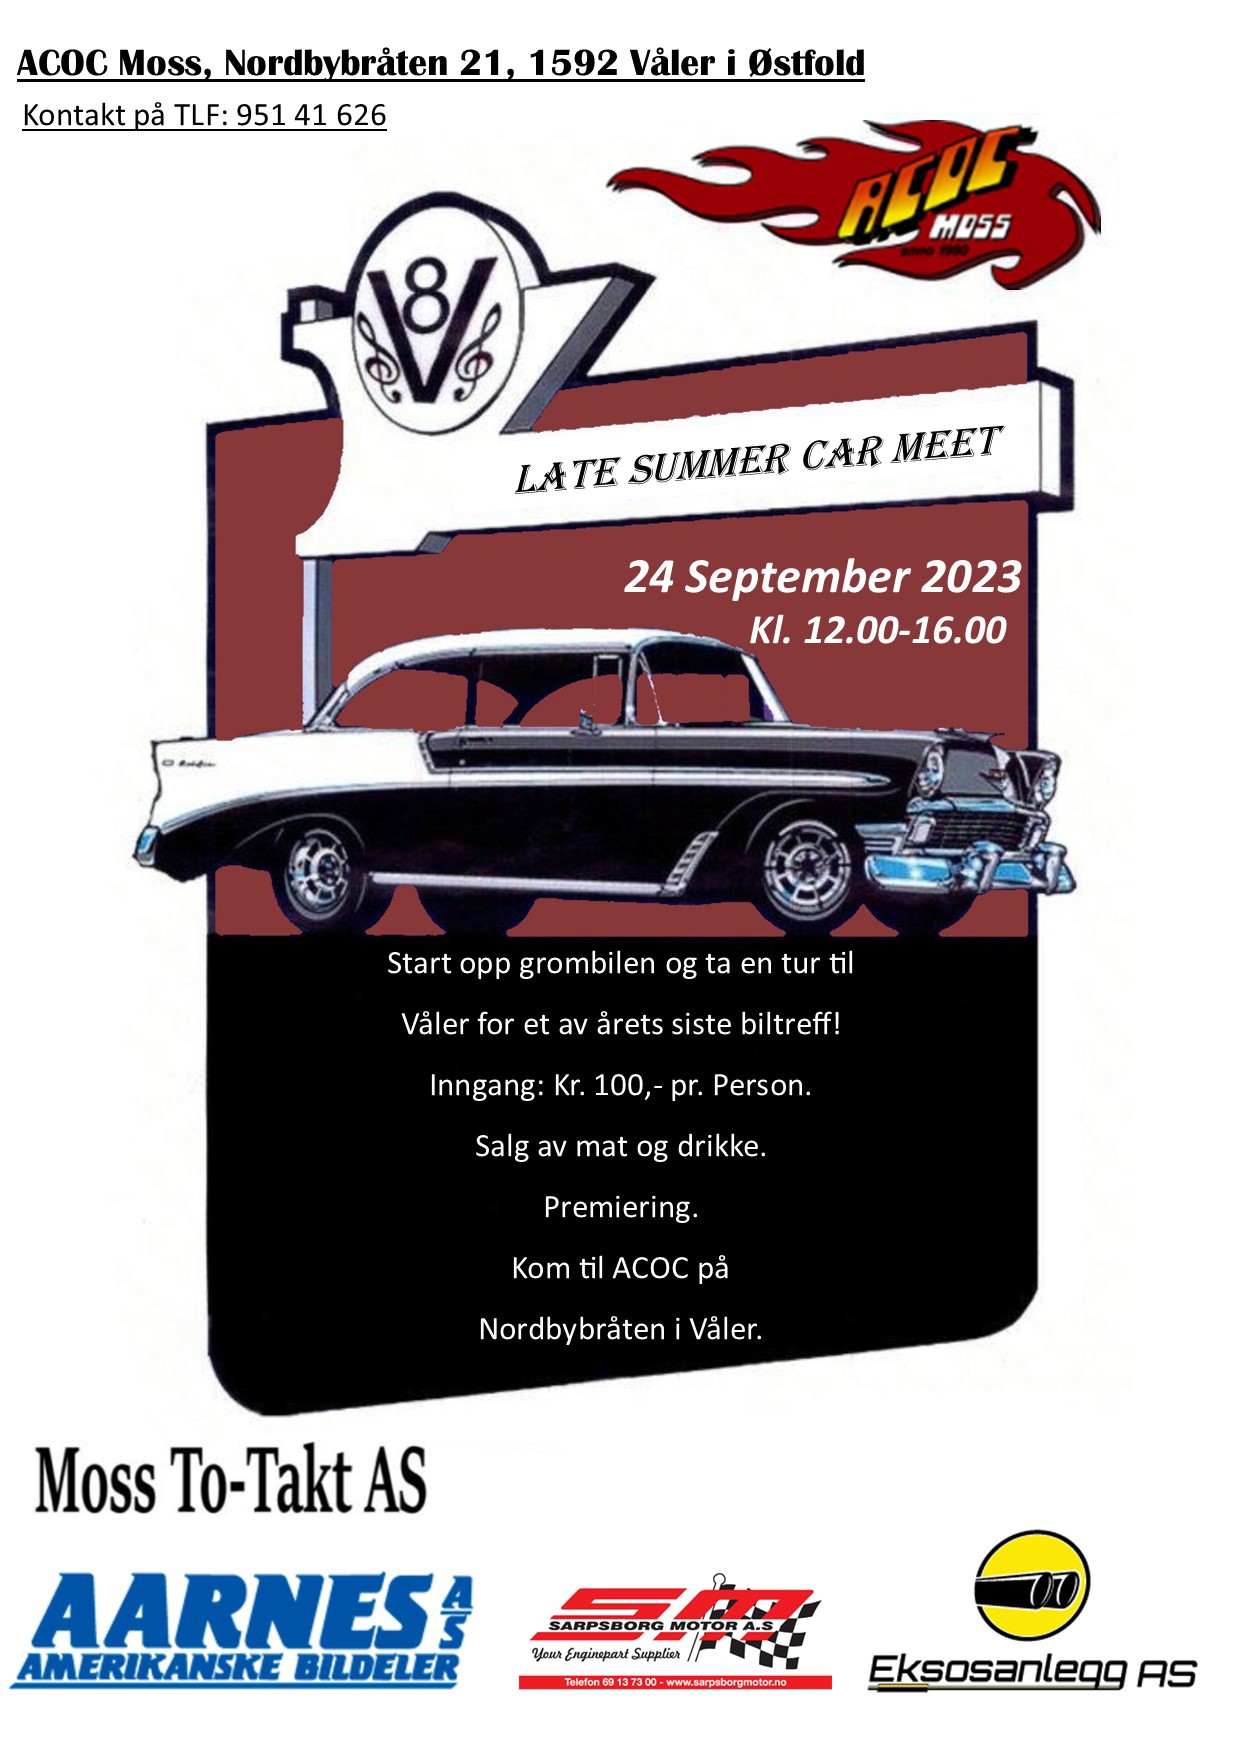 2023-09-24 Late Summer Car Meet_Moss.jpg